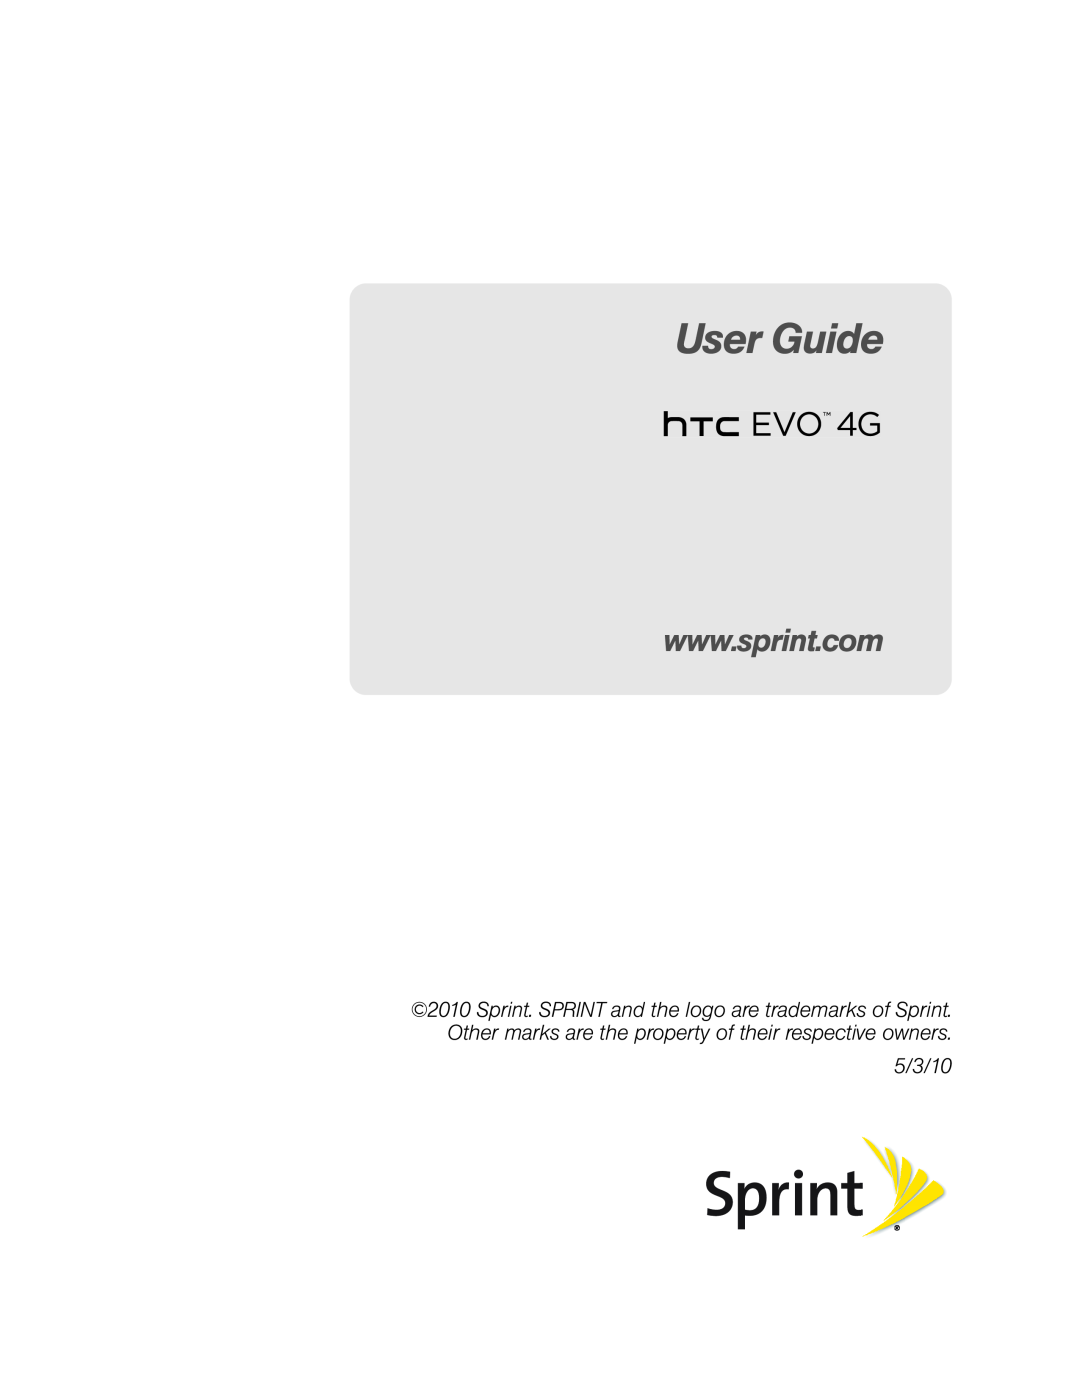 HTC HTC EVO 4G, PC36100 manual User Guide, 5/3/10 